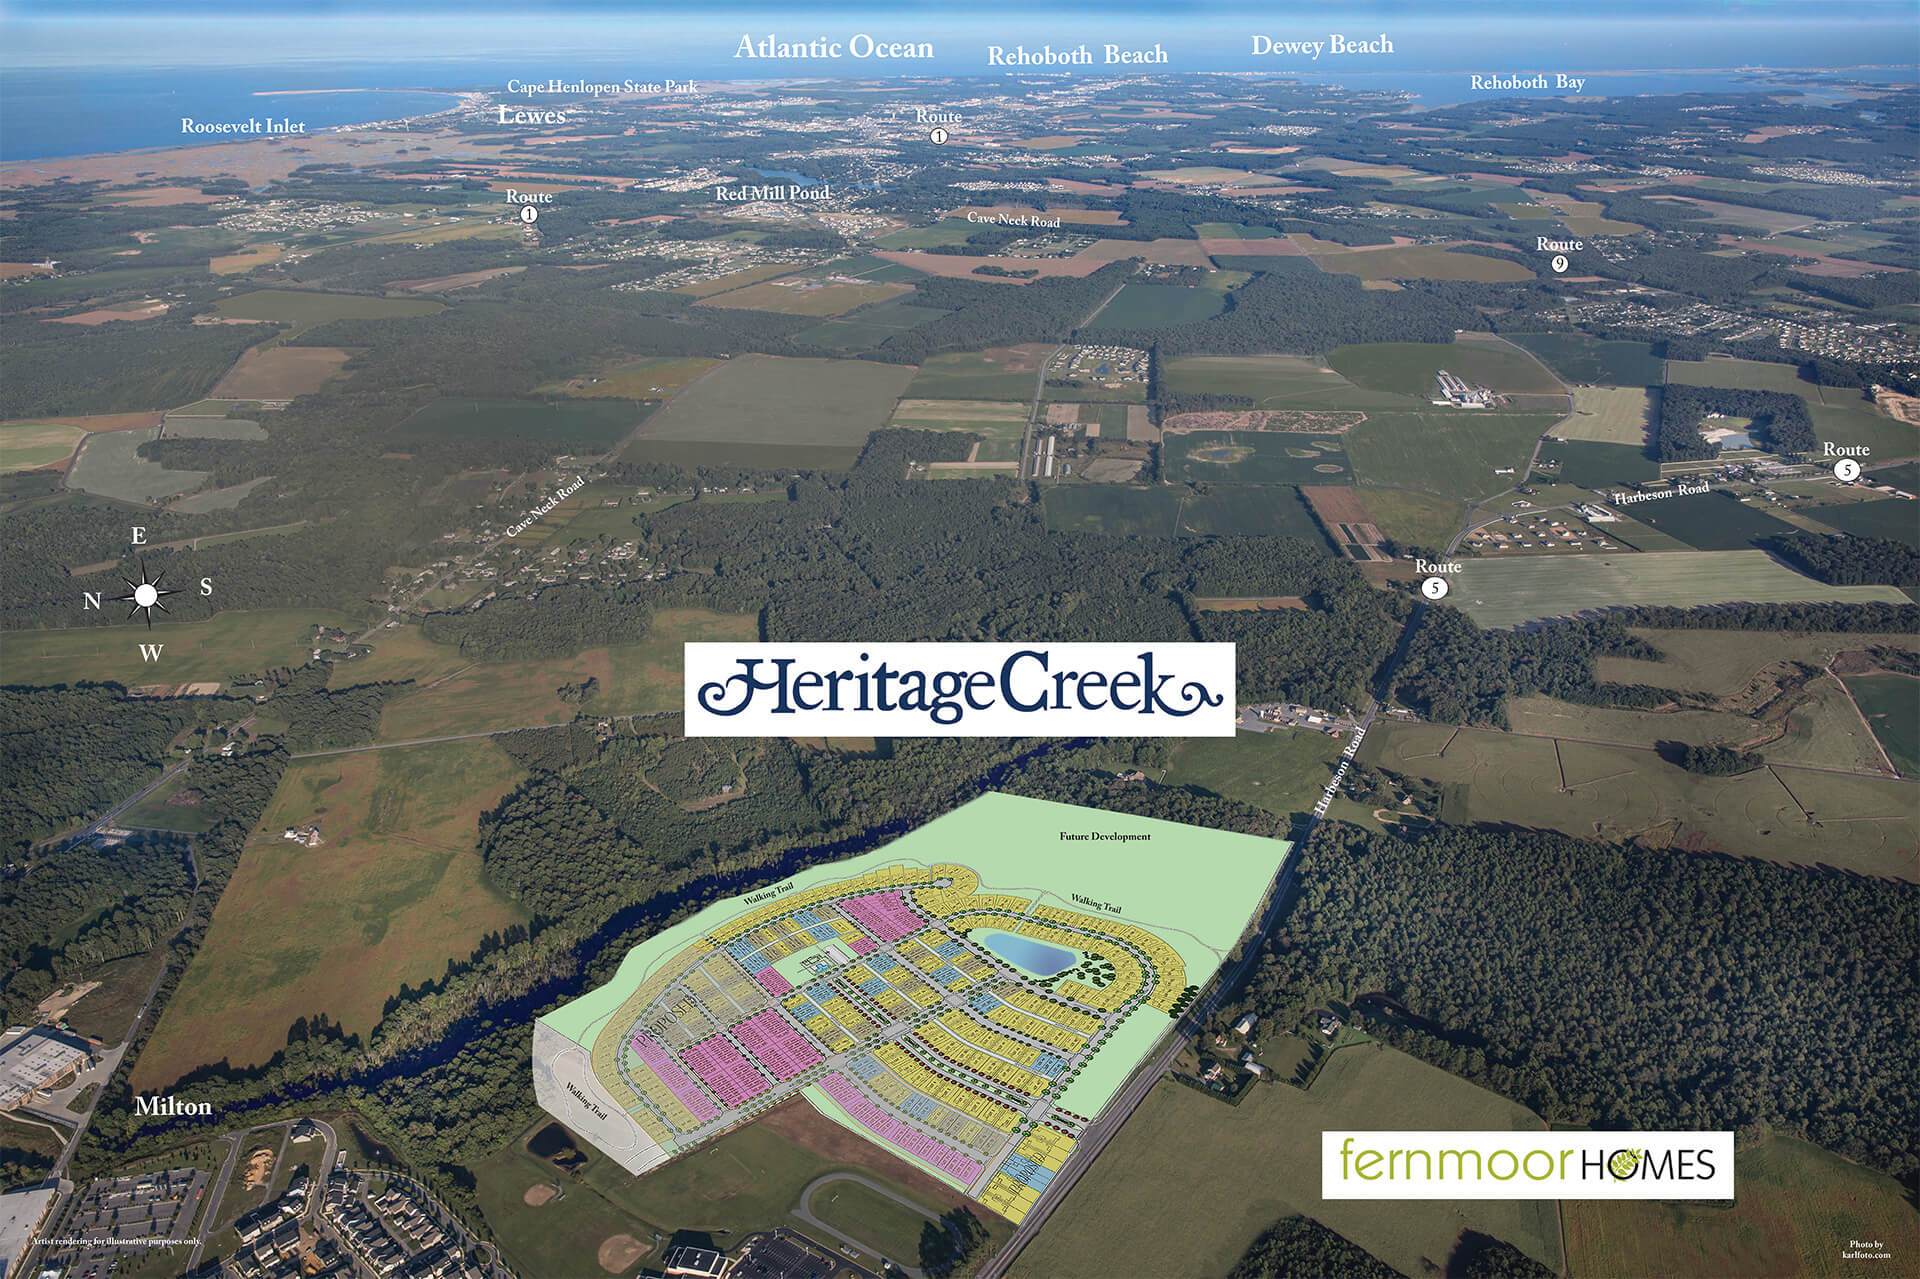 Aerial View of Heritage Creek:Heritage Creek